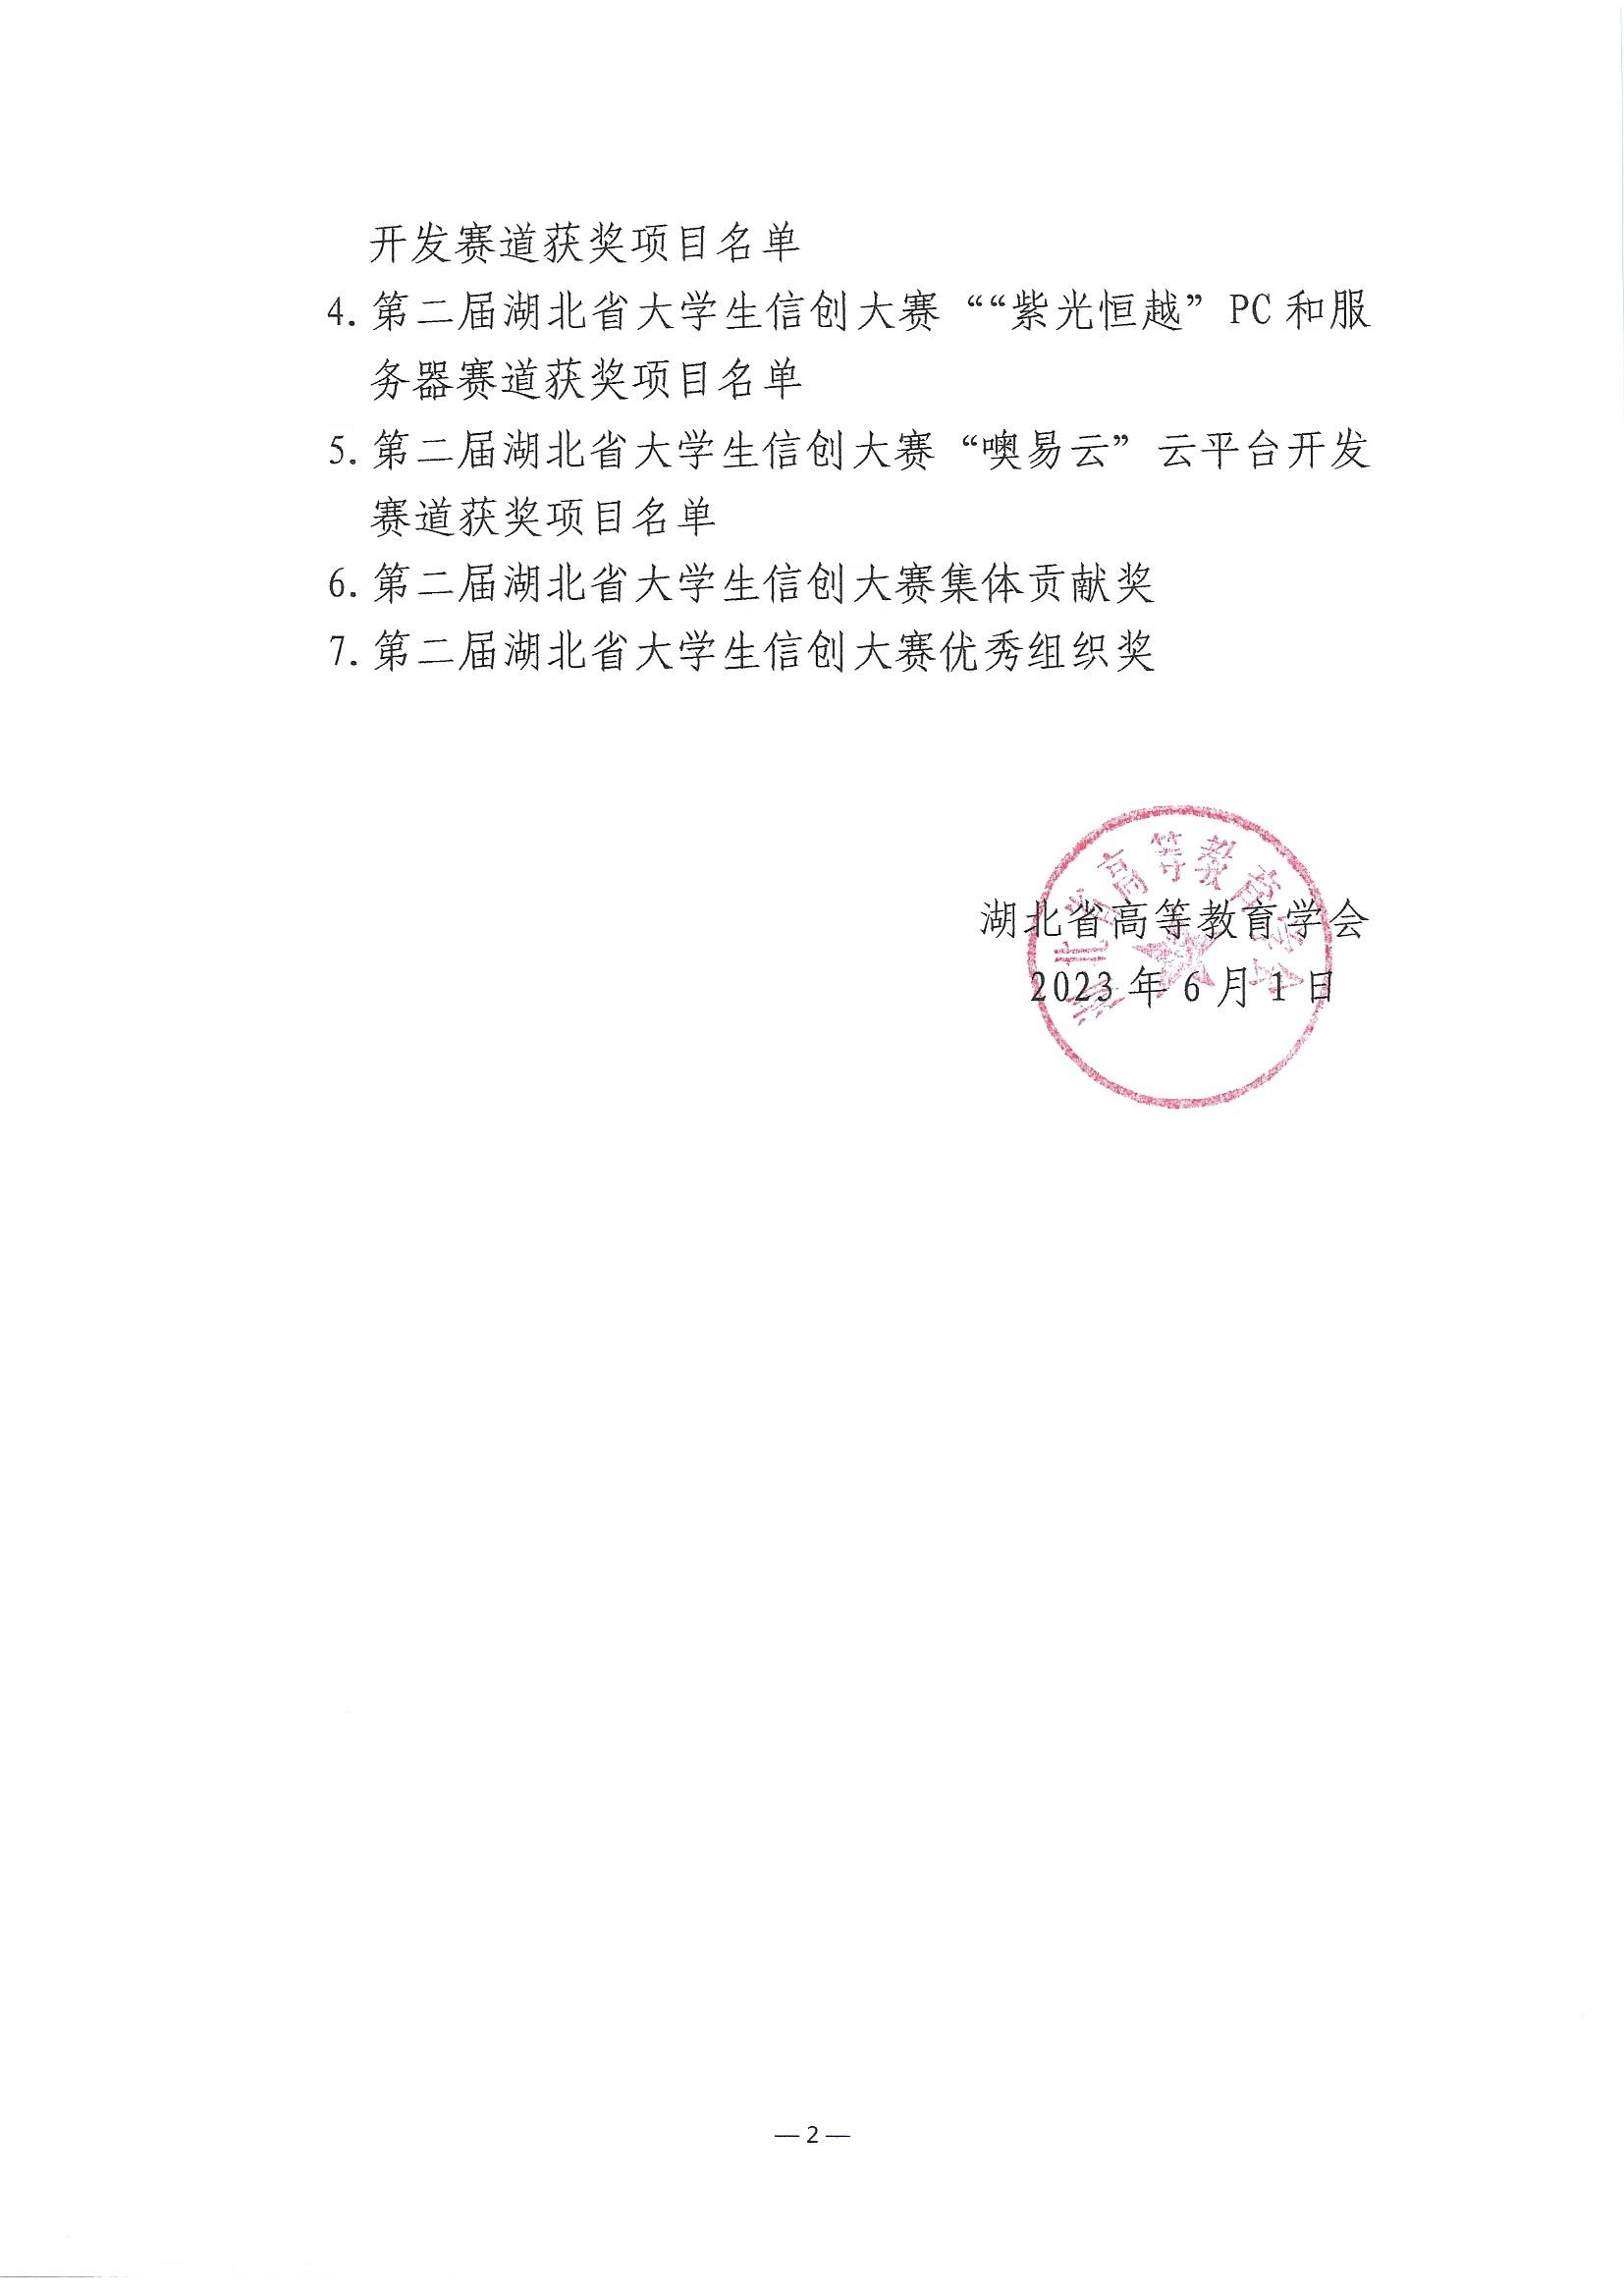 2023.6.8关于公布第二届湖北省大学生信创大赛获奖名单的通知(1)_页面_02.jpg